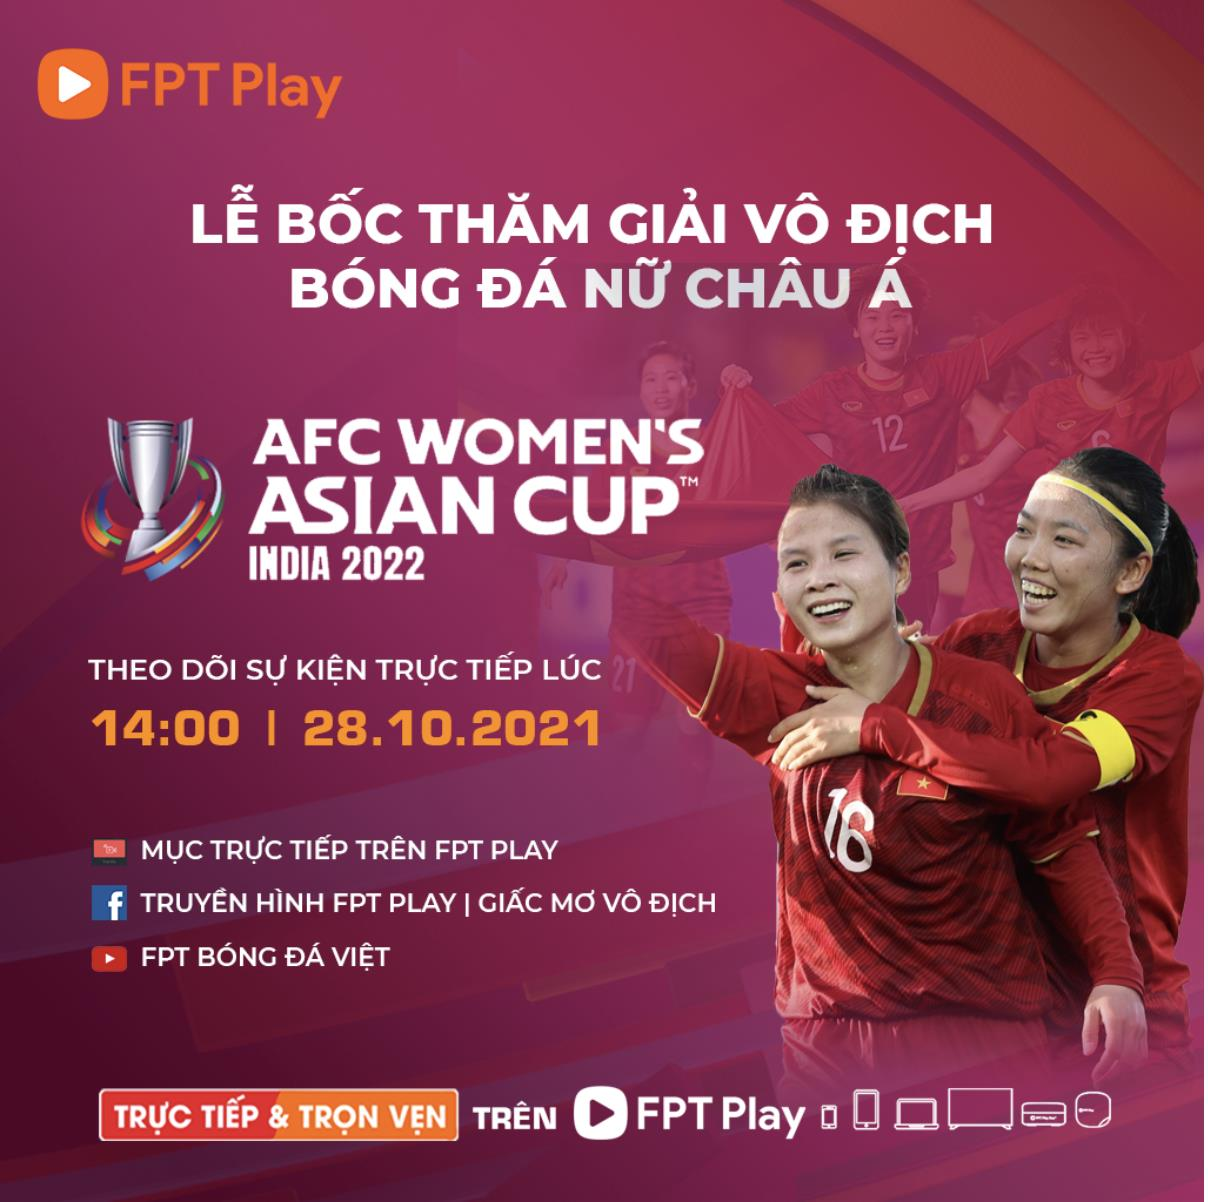 AFC Women’s Asian Cup 2022: Nơi tỏa sáng của những ngôi sao bóng đá nữ hàng đầu - 5